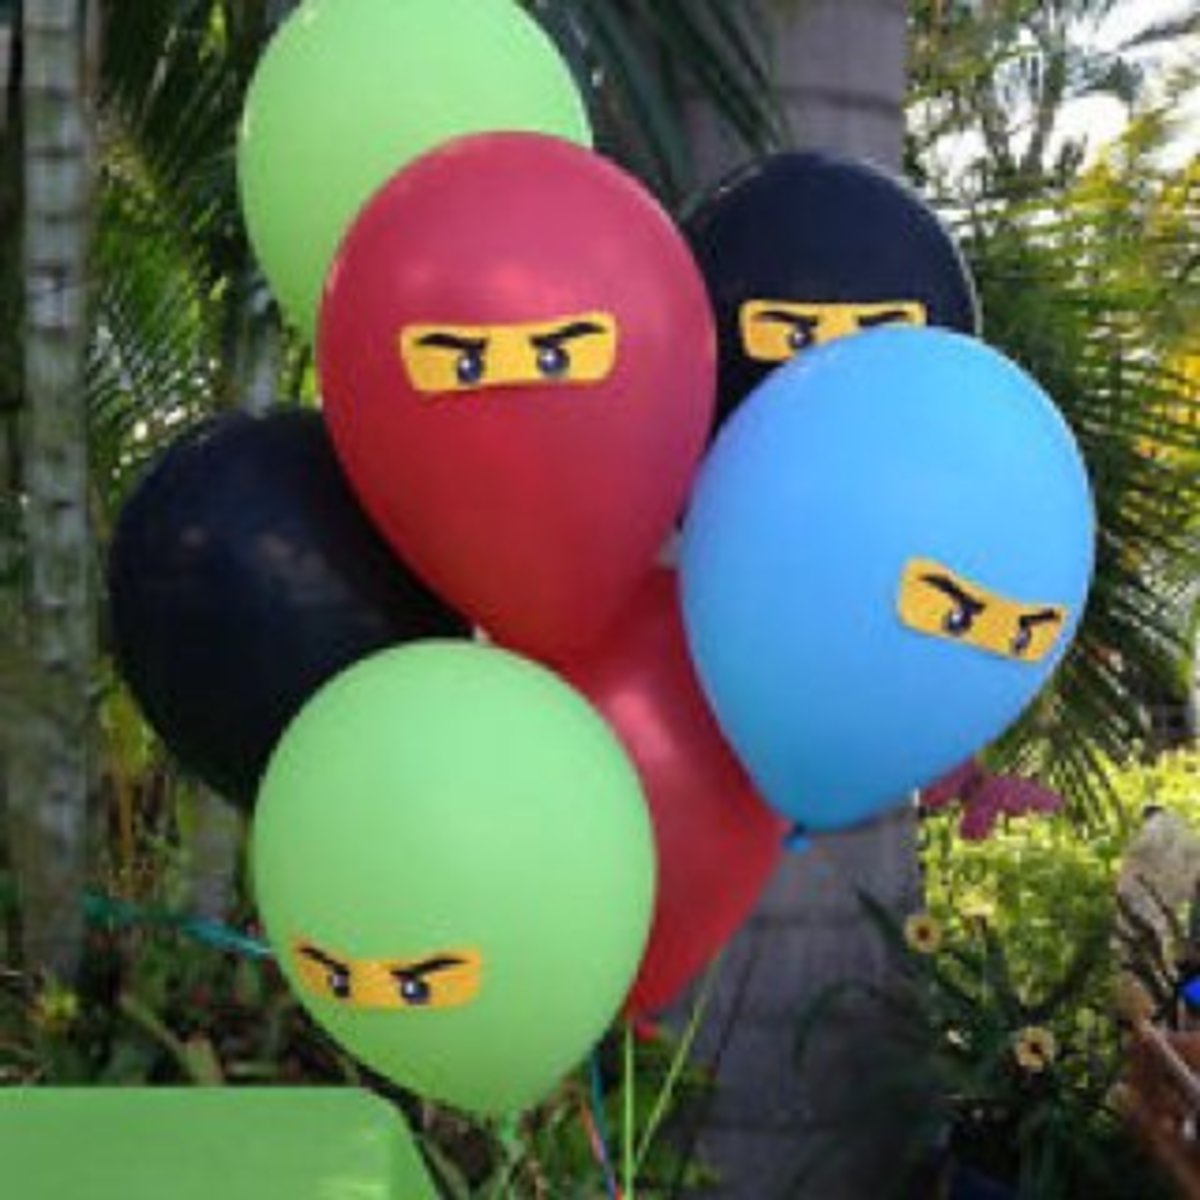 Make your own Ninja Ninjago balloons